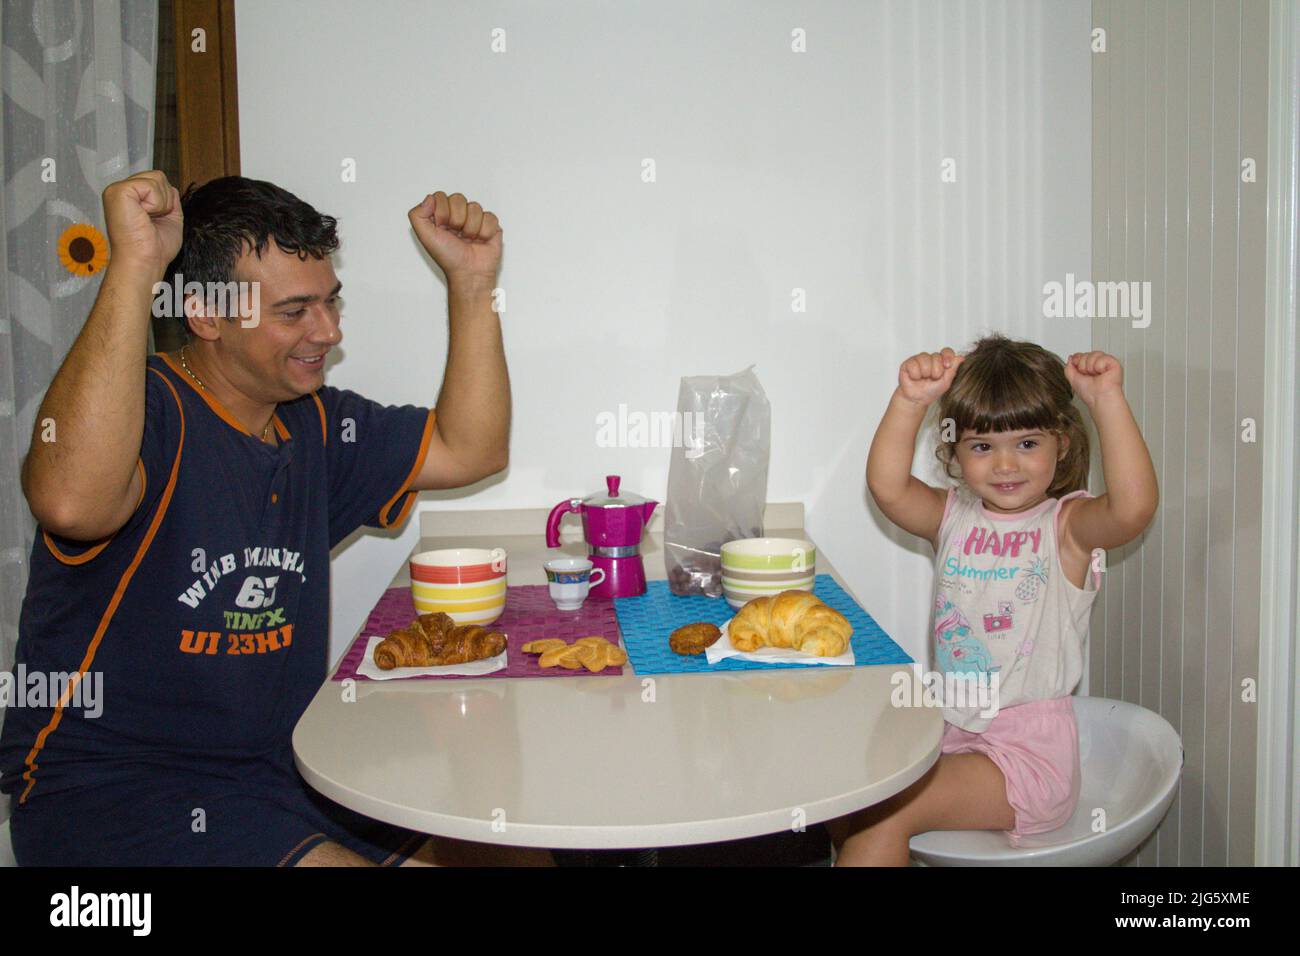 Imagen de un padre con su hija con los brazos levantados y sonriendo mientras desayunaba por la mañana Foto de stock